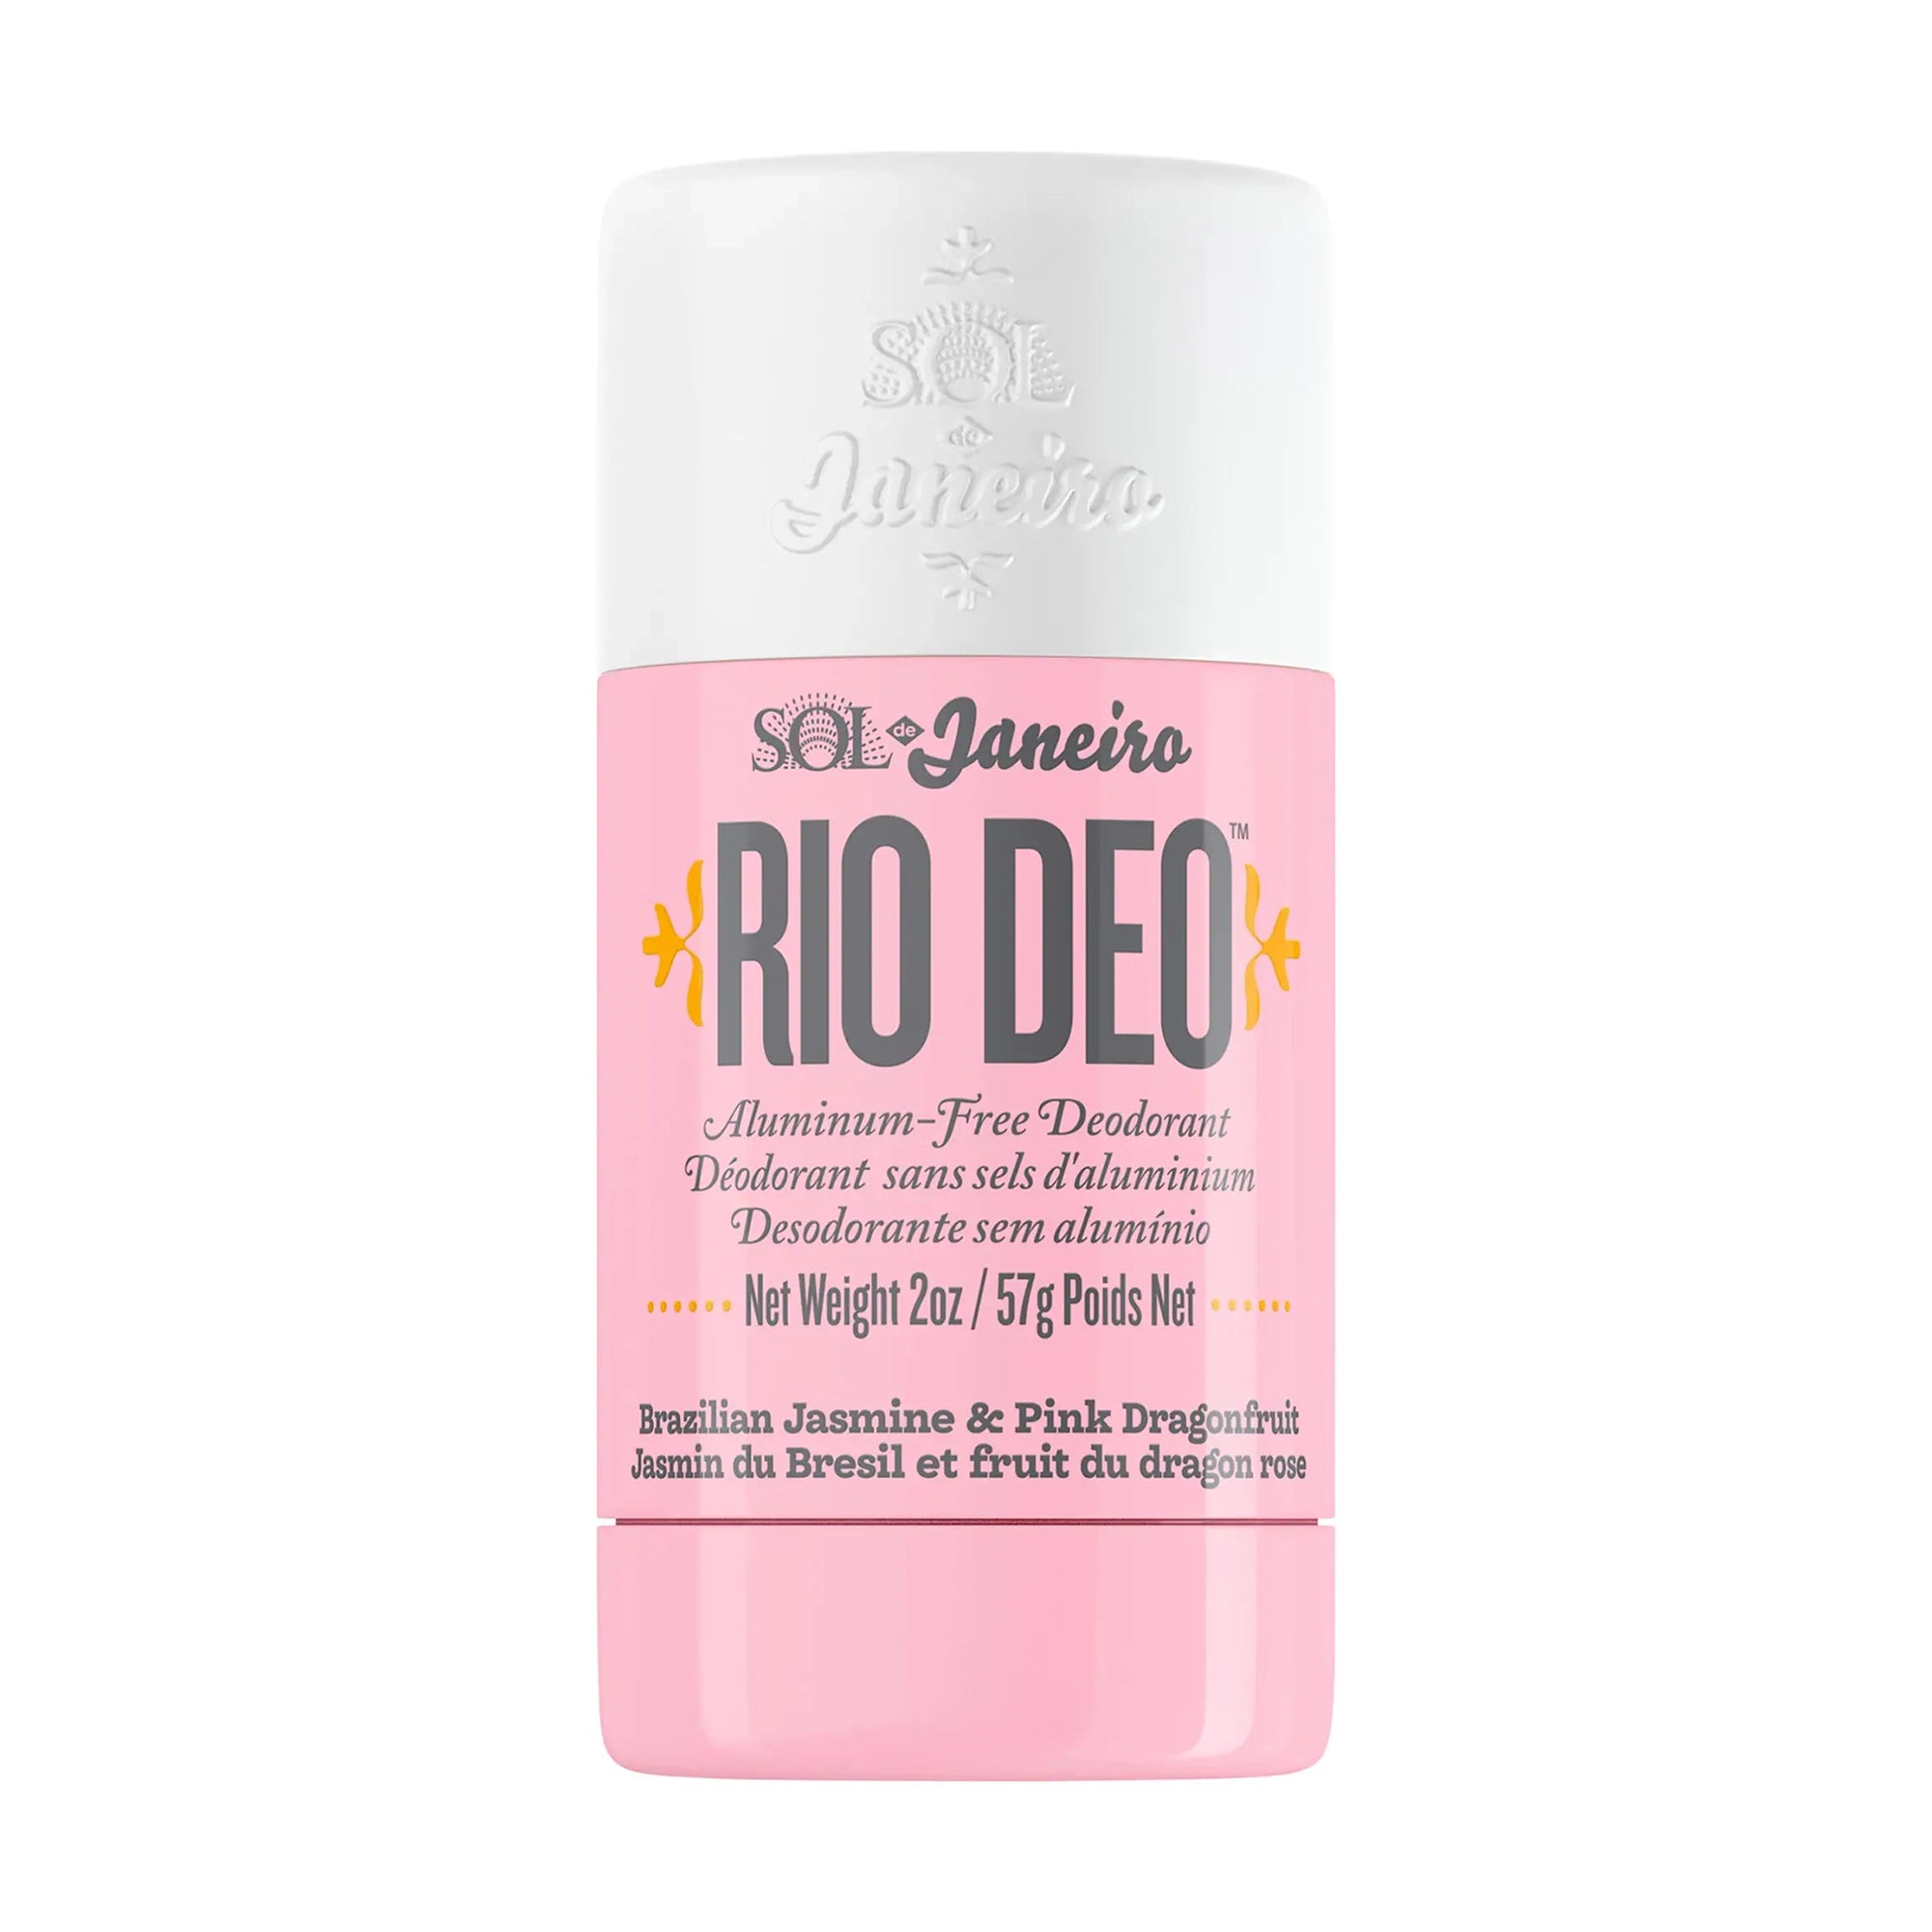 Sol de Janeiro Rio Deo Aluminum-Free Deodorant Cheirosa 68 / 2OZ